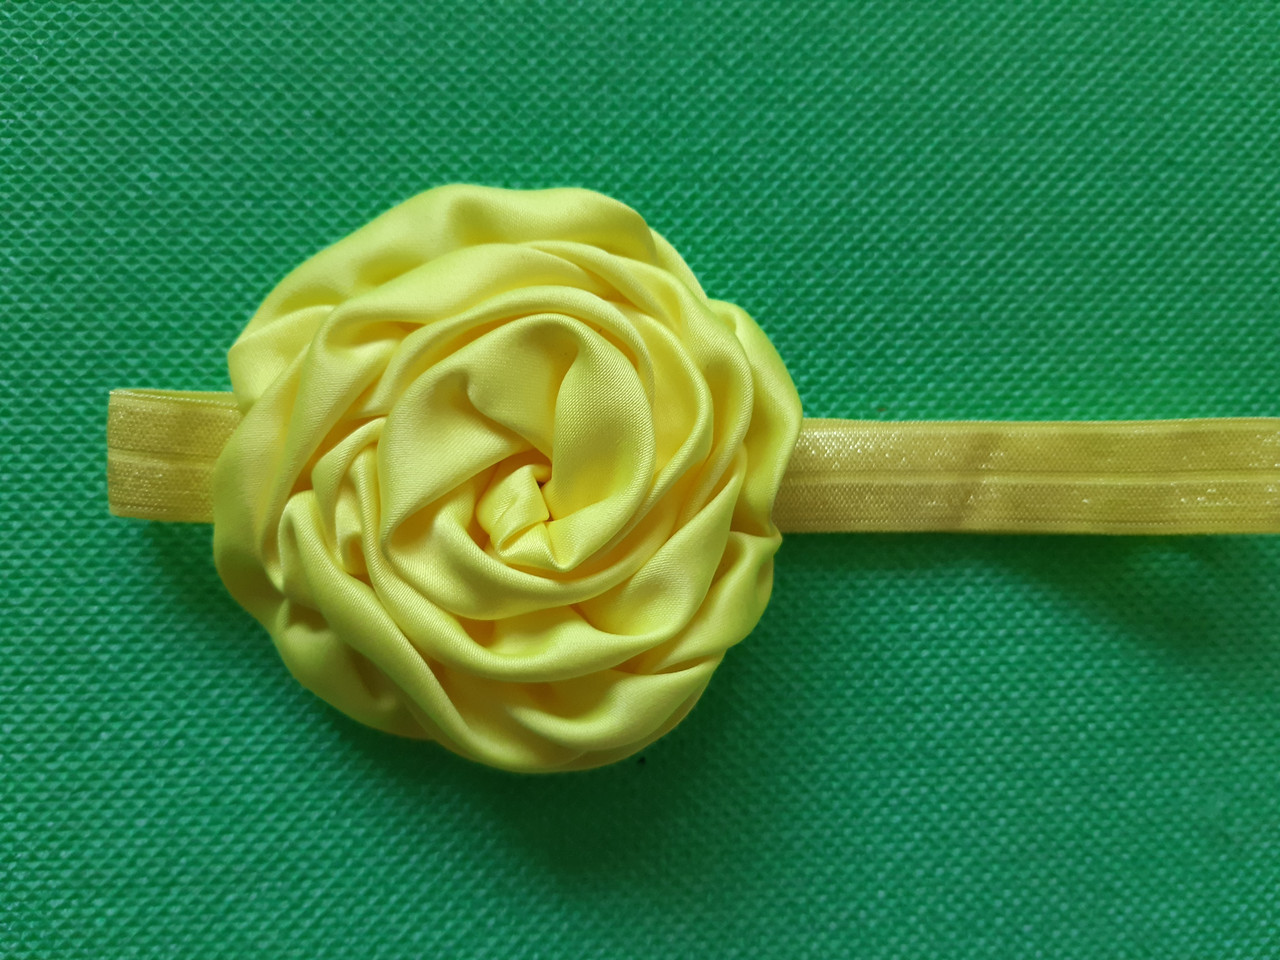 Пов'язка дитяча з трояндочкою лимонна - квітка 8см, окружність 36-52см